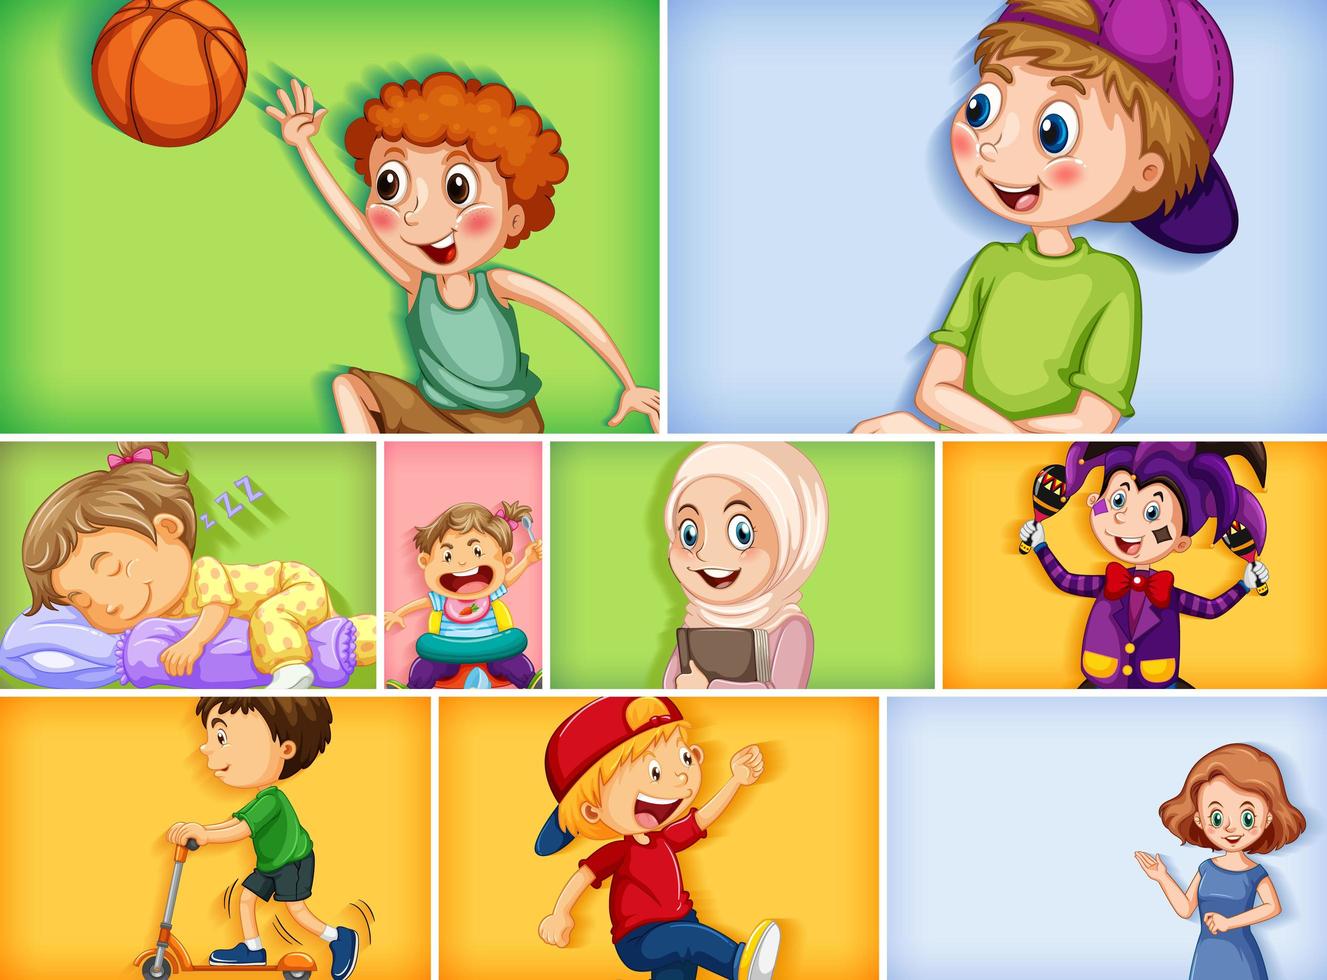 Conjunto de diferentes personajes infantiles sobre fondo de color diferente vector